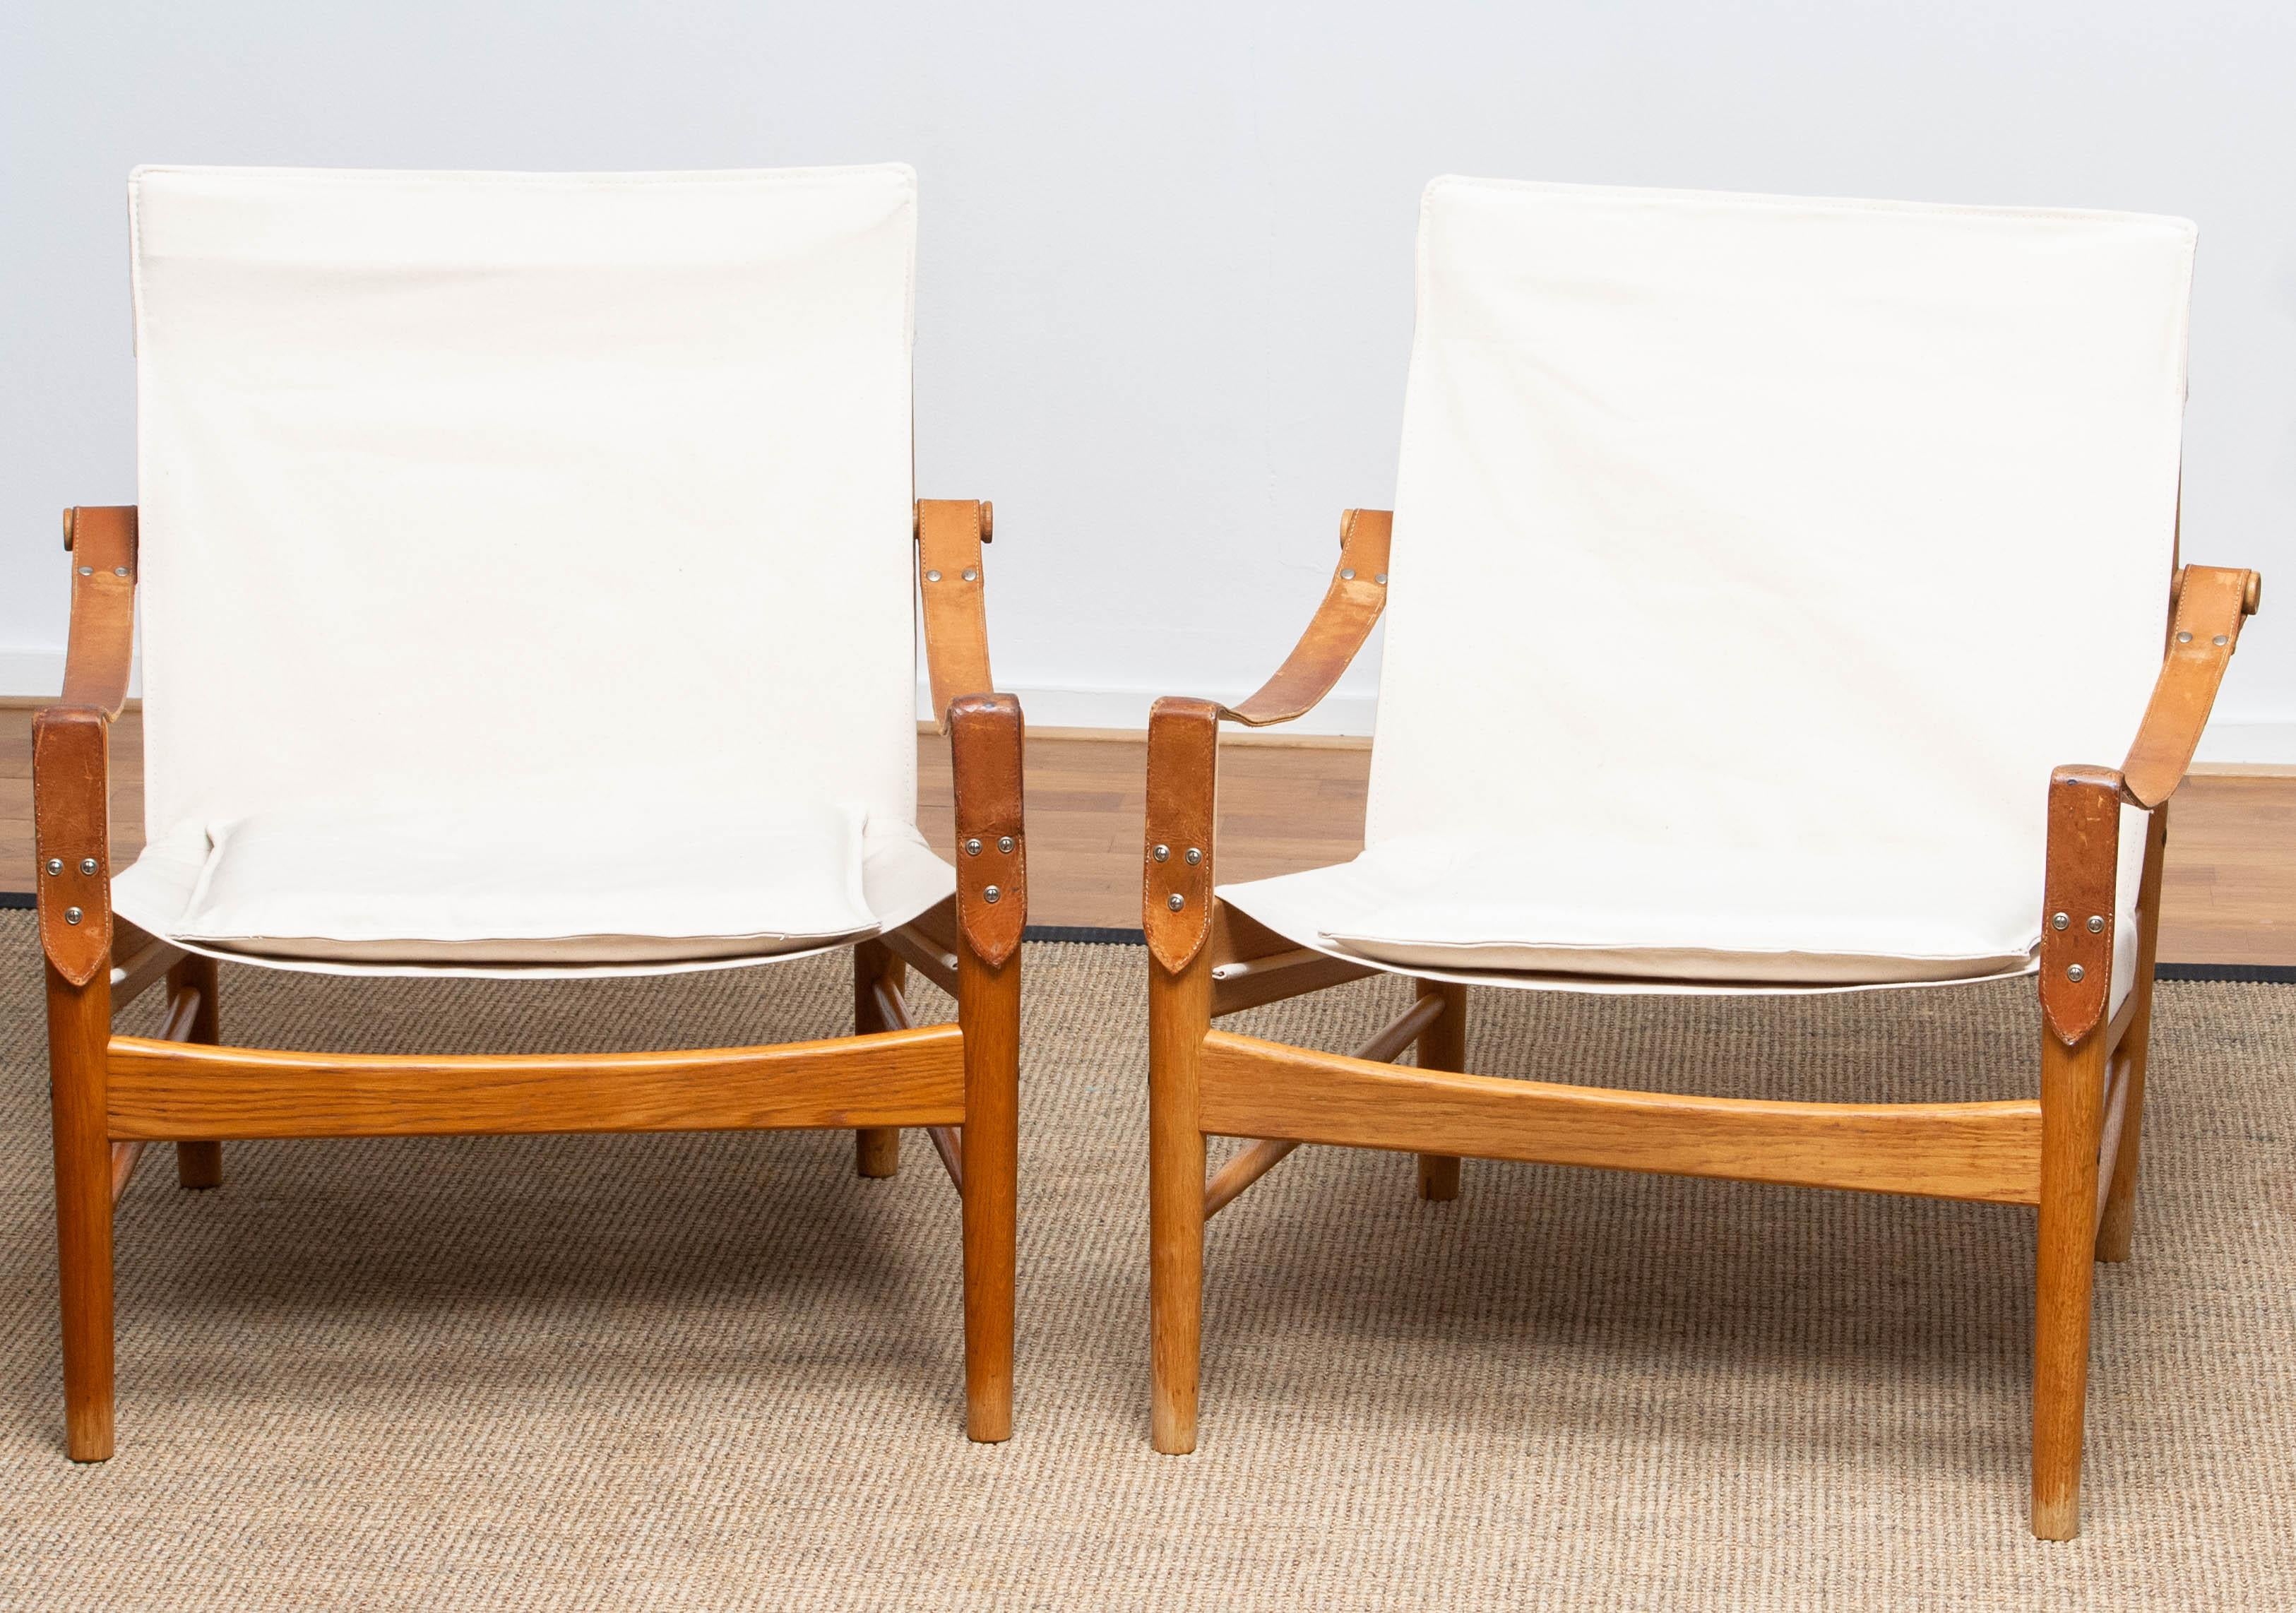 Belle paire de chaises safari conçues par Hans Olsen pour Viska Möbler à Kinna, en Suède.
Ces chaises sont fabriquées en chêne et recouvertes d'une nouvelle toile.
Ils sont dans un état merveilleux et marqués.
Période : 1960s.
Dimensions : H 81